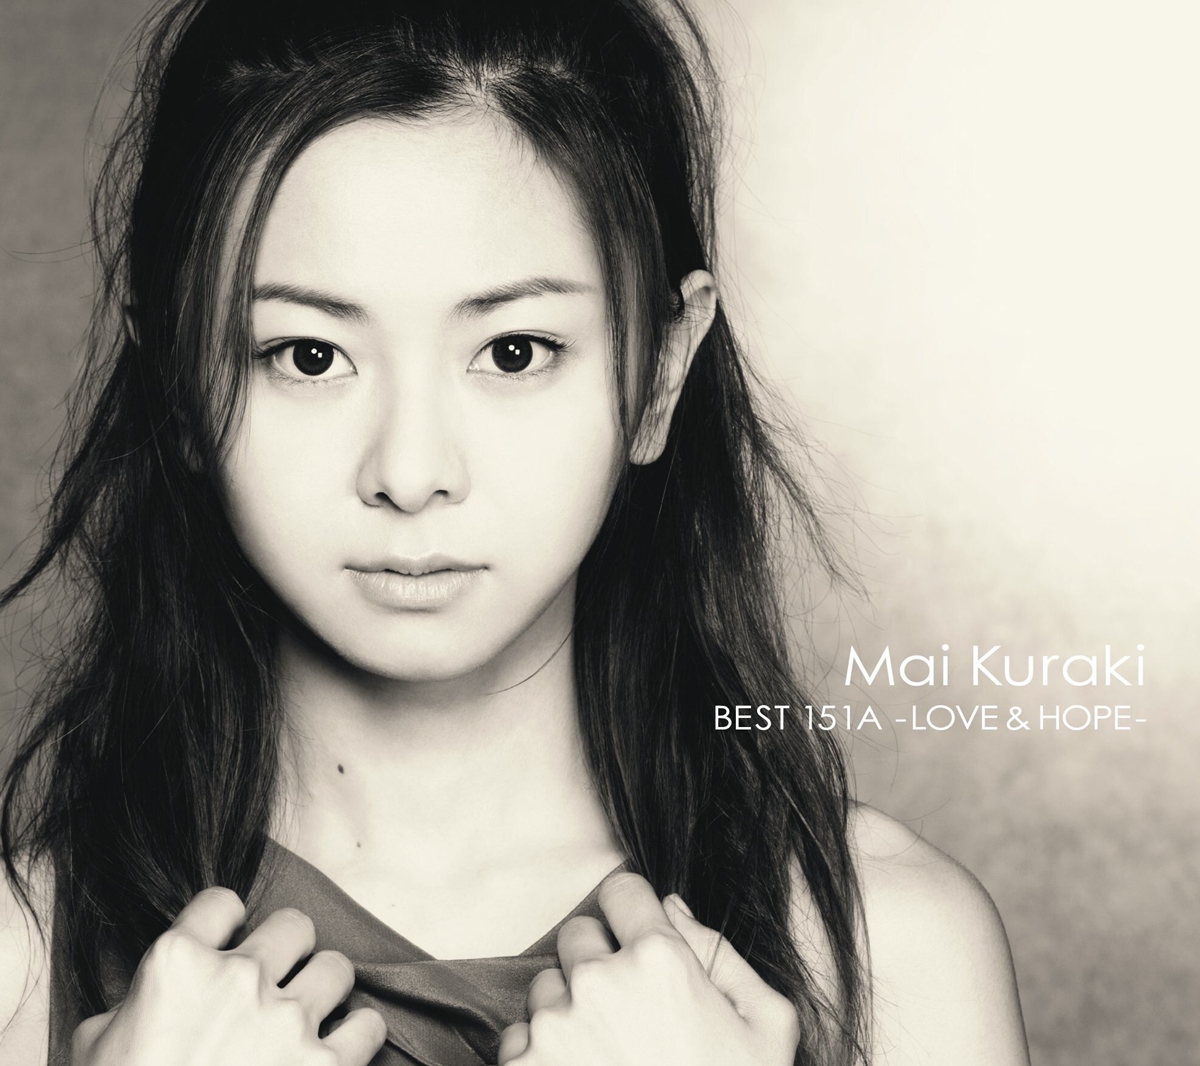 『倉木麻衣 - DYNAMITE 歌詞』収録の『Mai Kuraki BEST 151A -LOVE & HOPE-』ジャケット